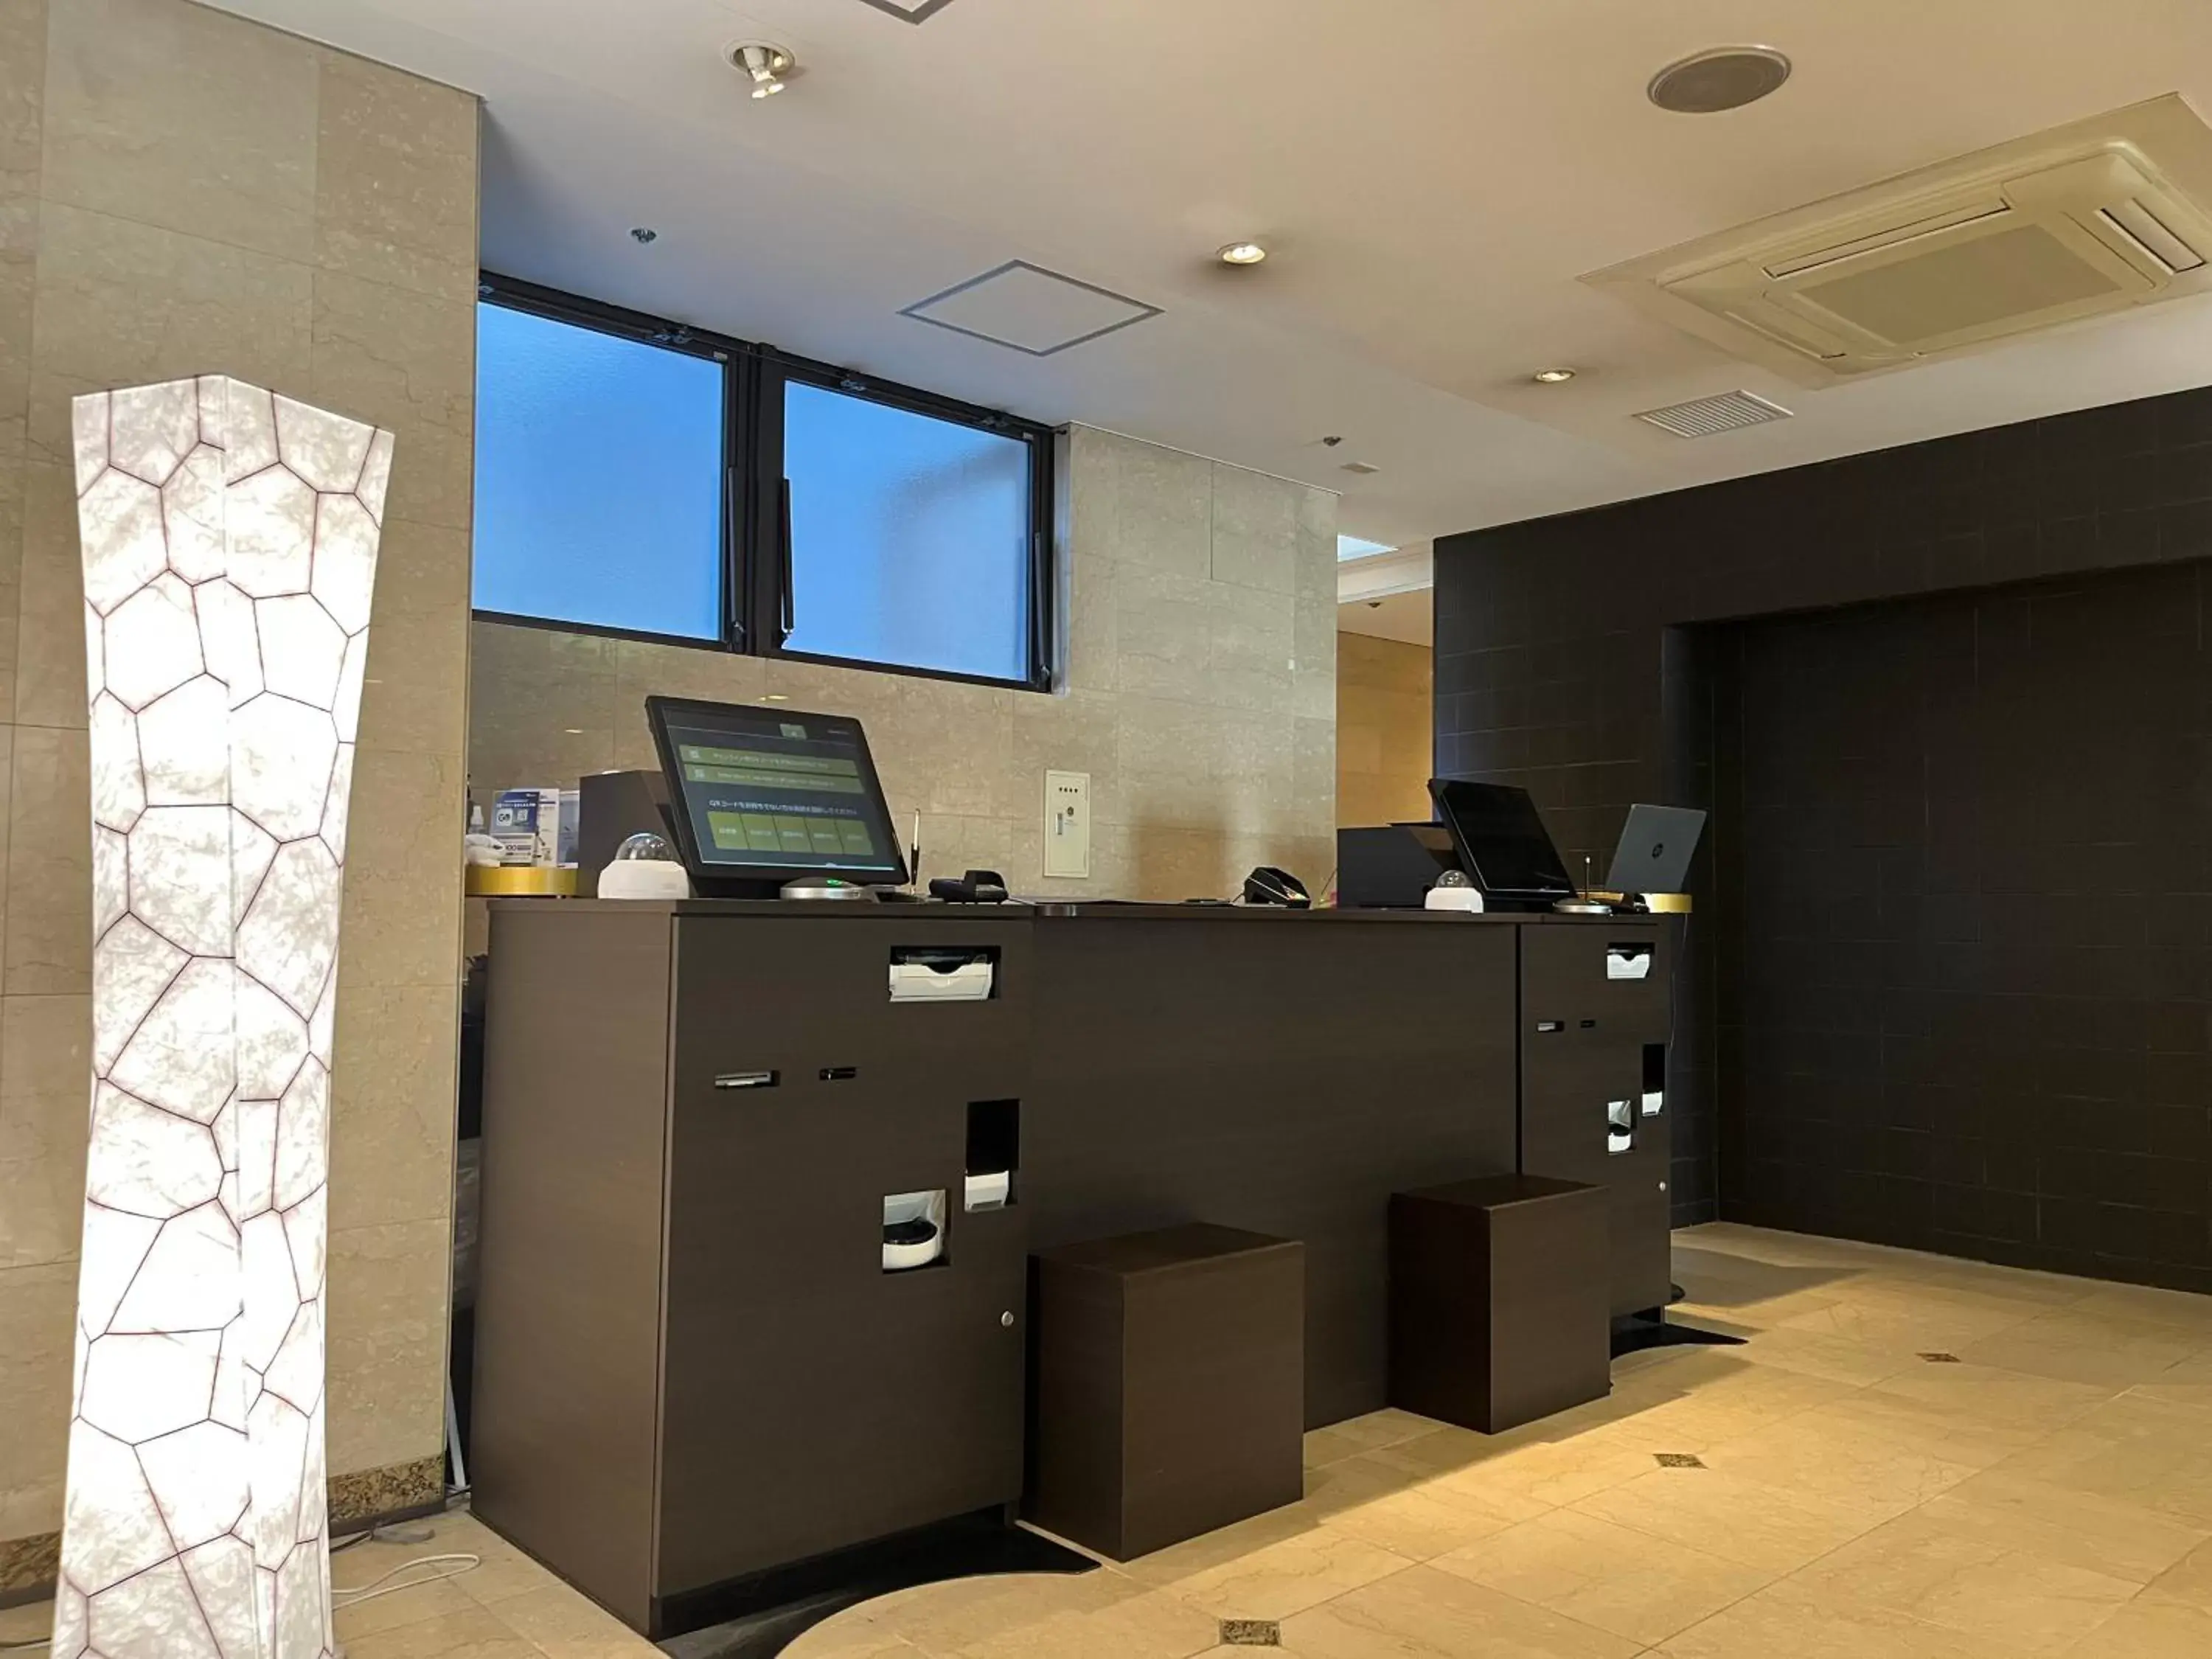 Lobby or reception, Lobby/Reception in Plaza Hotel Tenjin